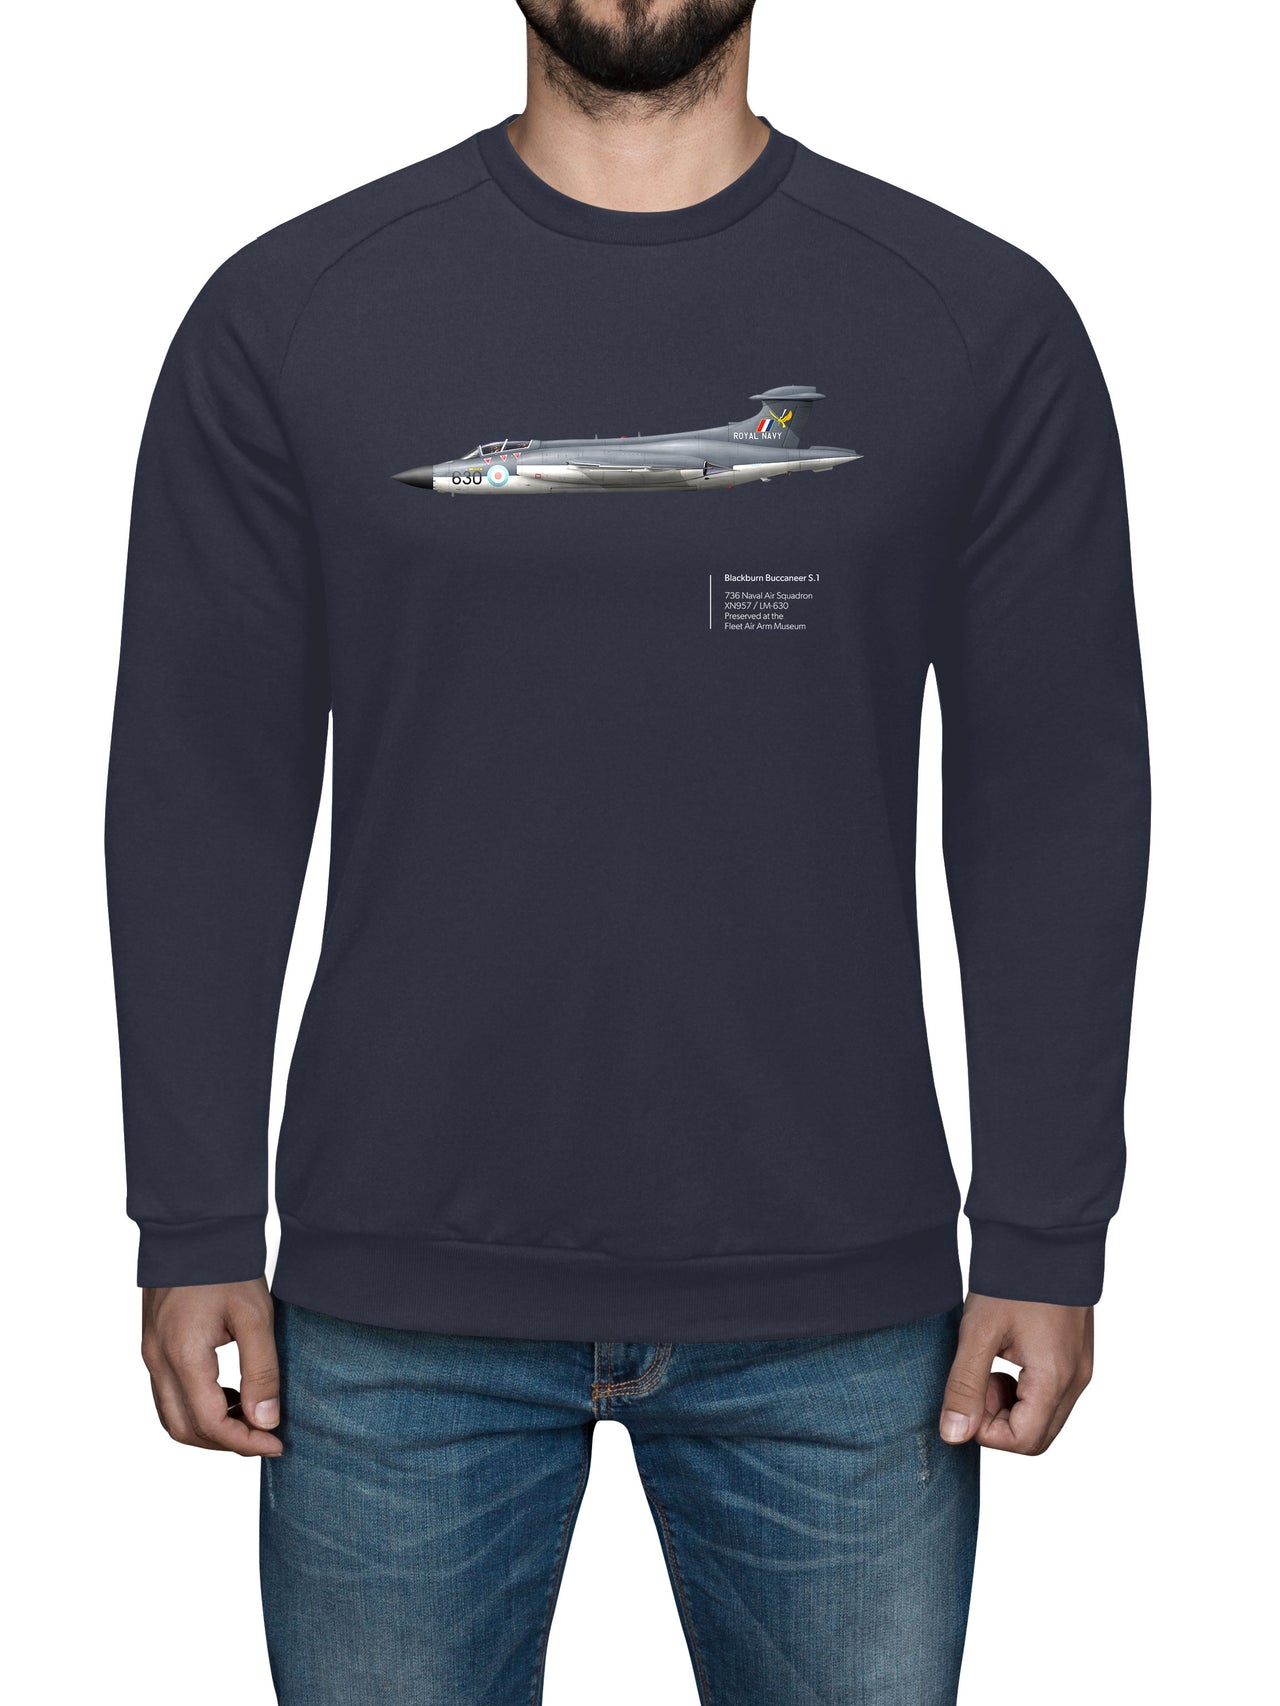 Buccaneer 736 NAS - Sweat Shirt